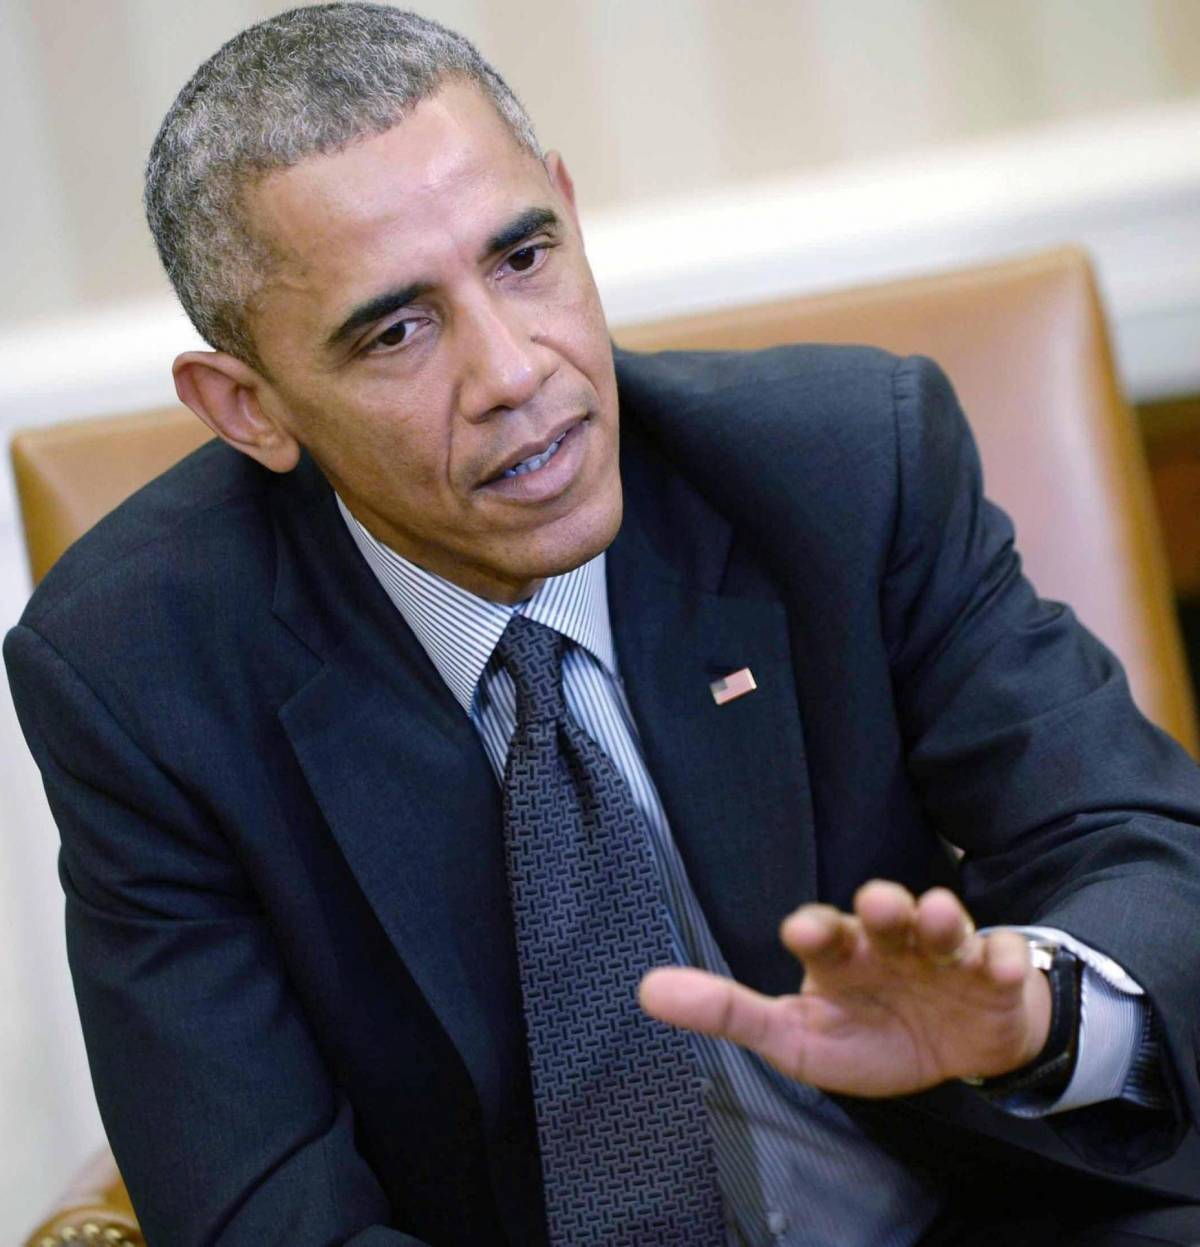 Quando Obama minimizzava: "Isis? Solo riserve di basket"